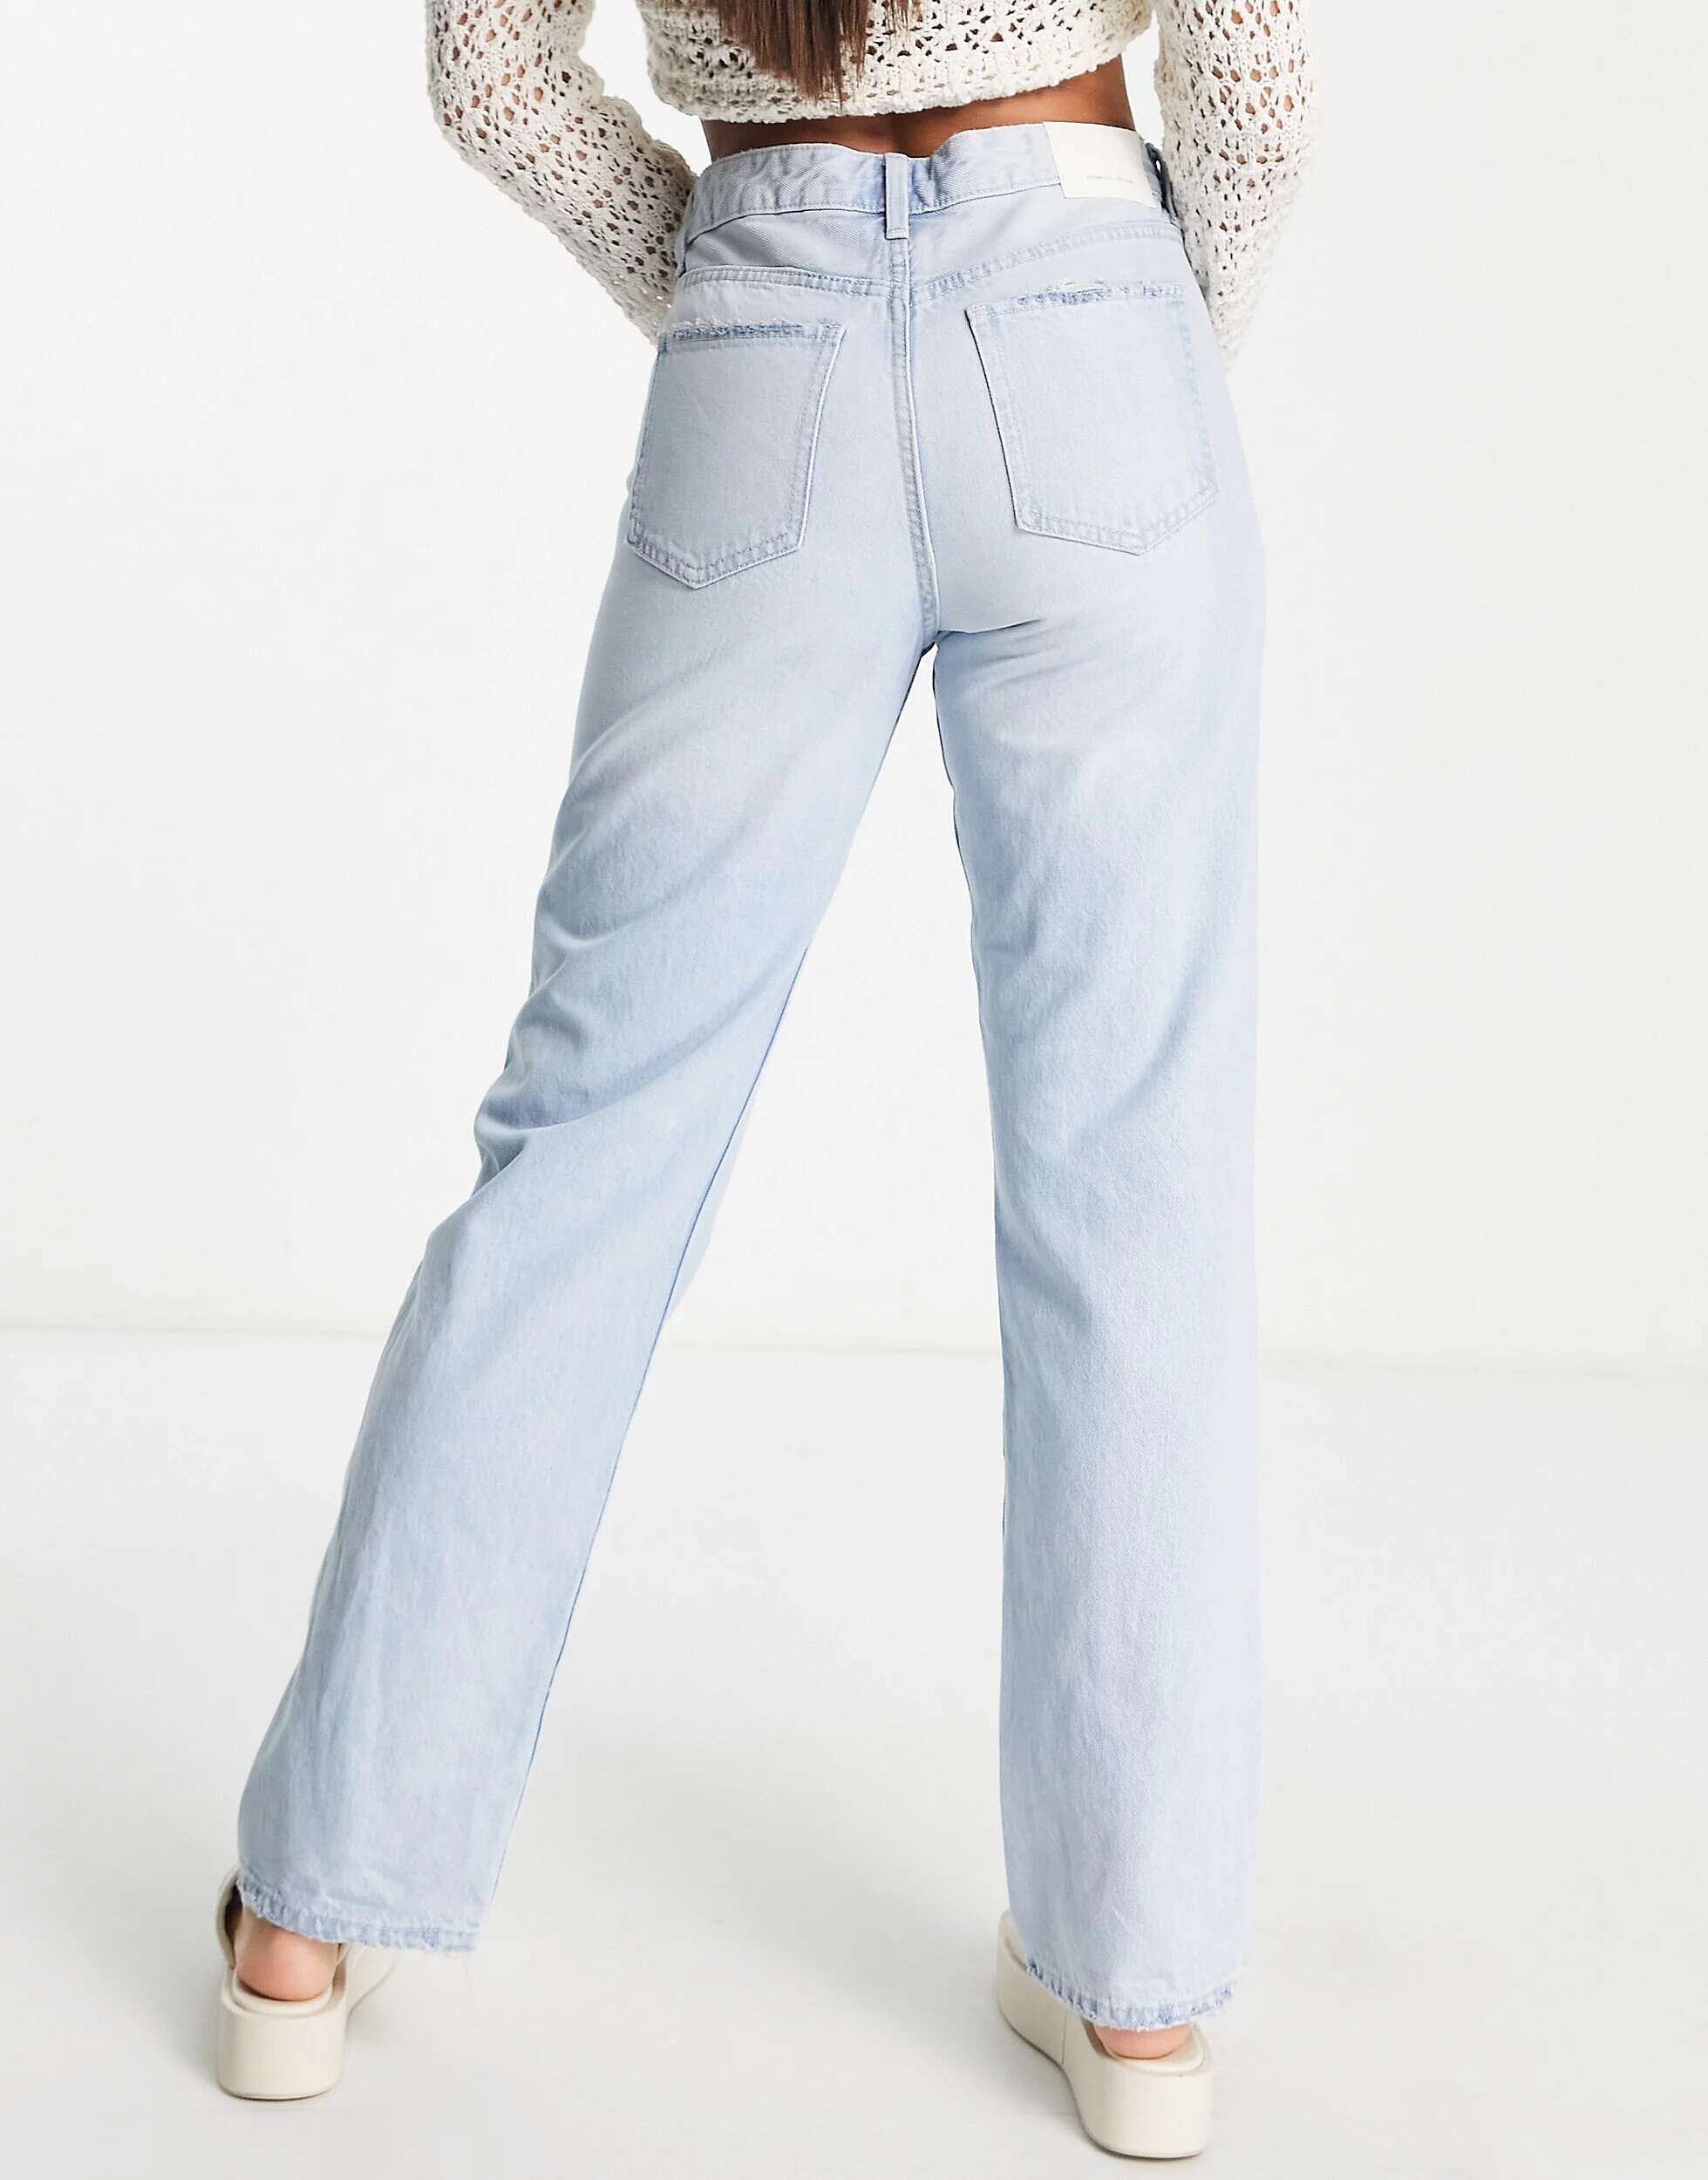 Отбеленные джинсы с завышенной талией Bershka Tall